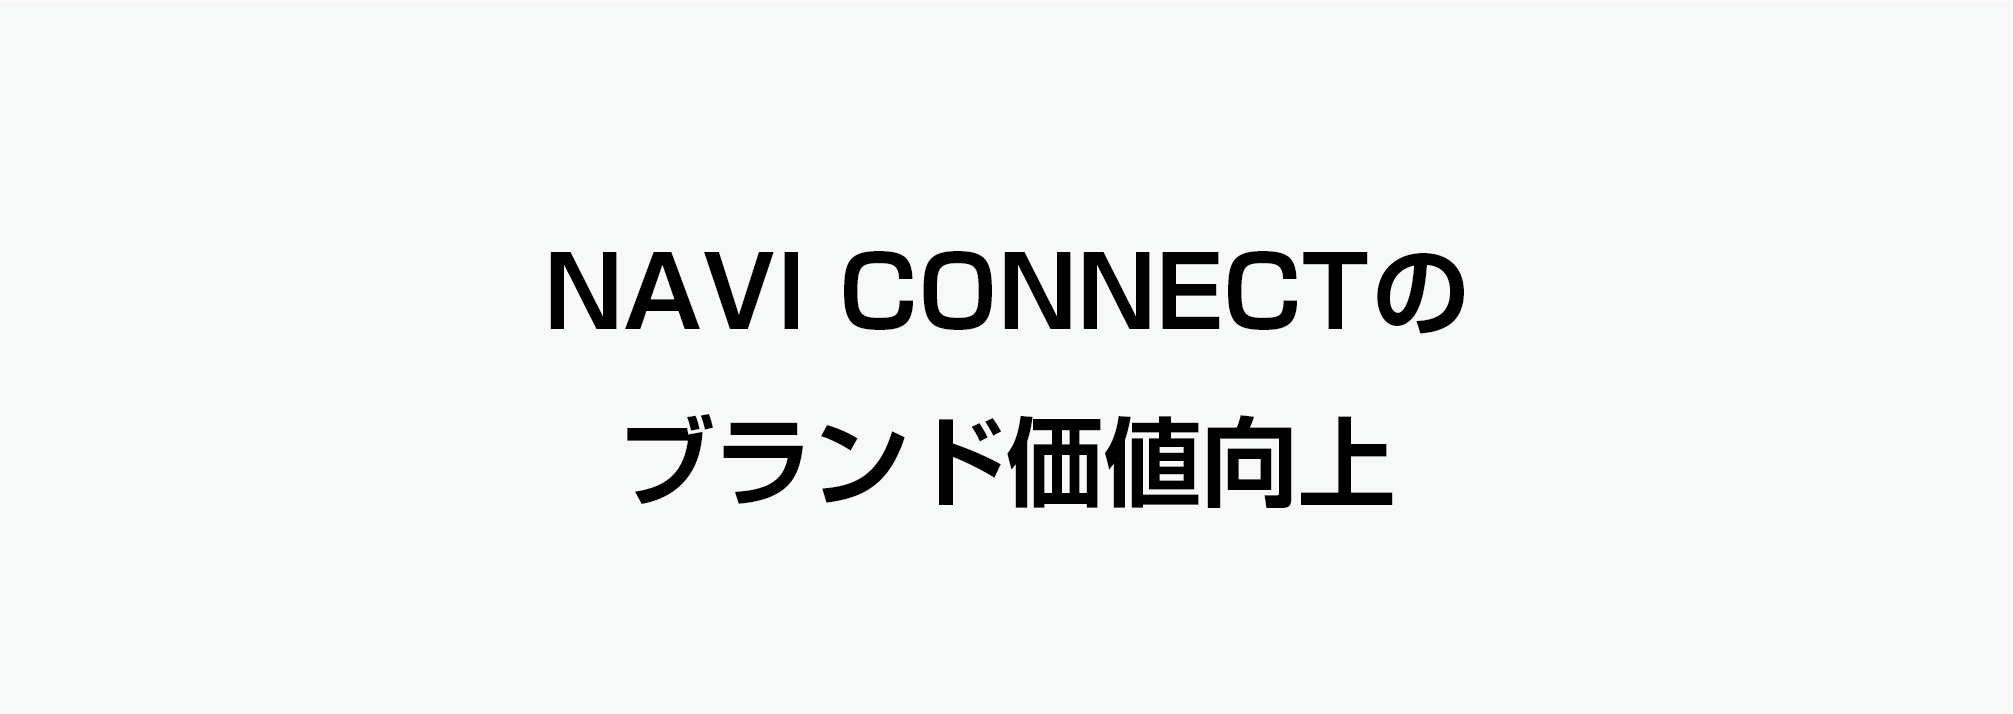 これからの挑戦2「NAVI CONNECTのブランド価値向上」